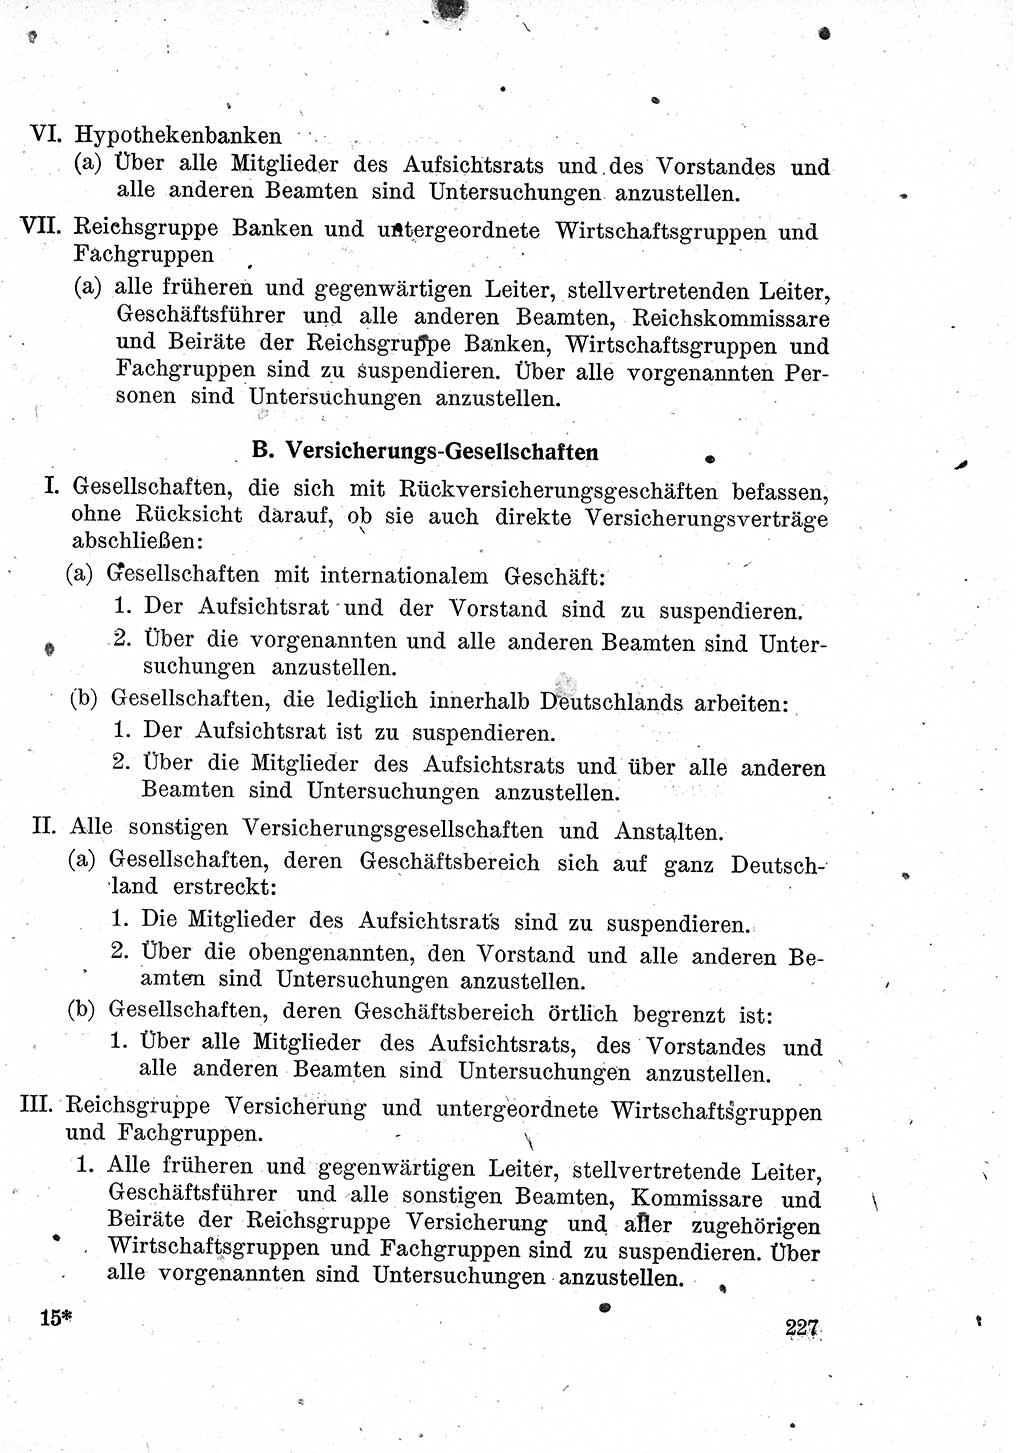 Das Recht der Besatzungsmacht (Deutschland), Proklamationen, Deklerationen, Verordnungen, Gesetze und Bekanntmachungen 1947, Seite 227 (R. Bes. Dtl. 1947, S. 227)